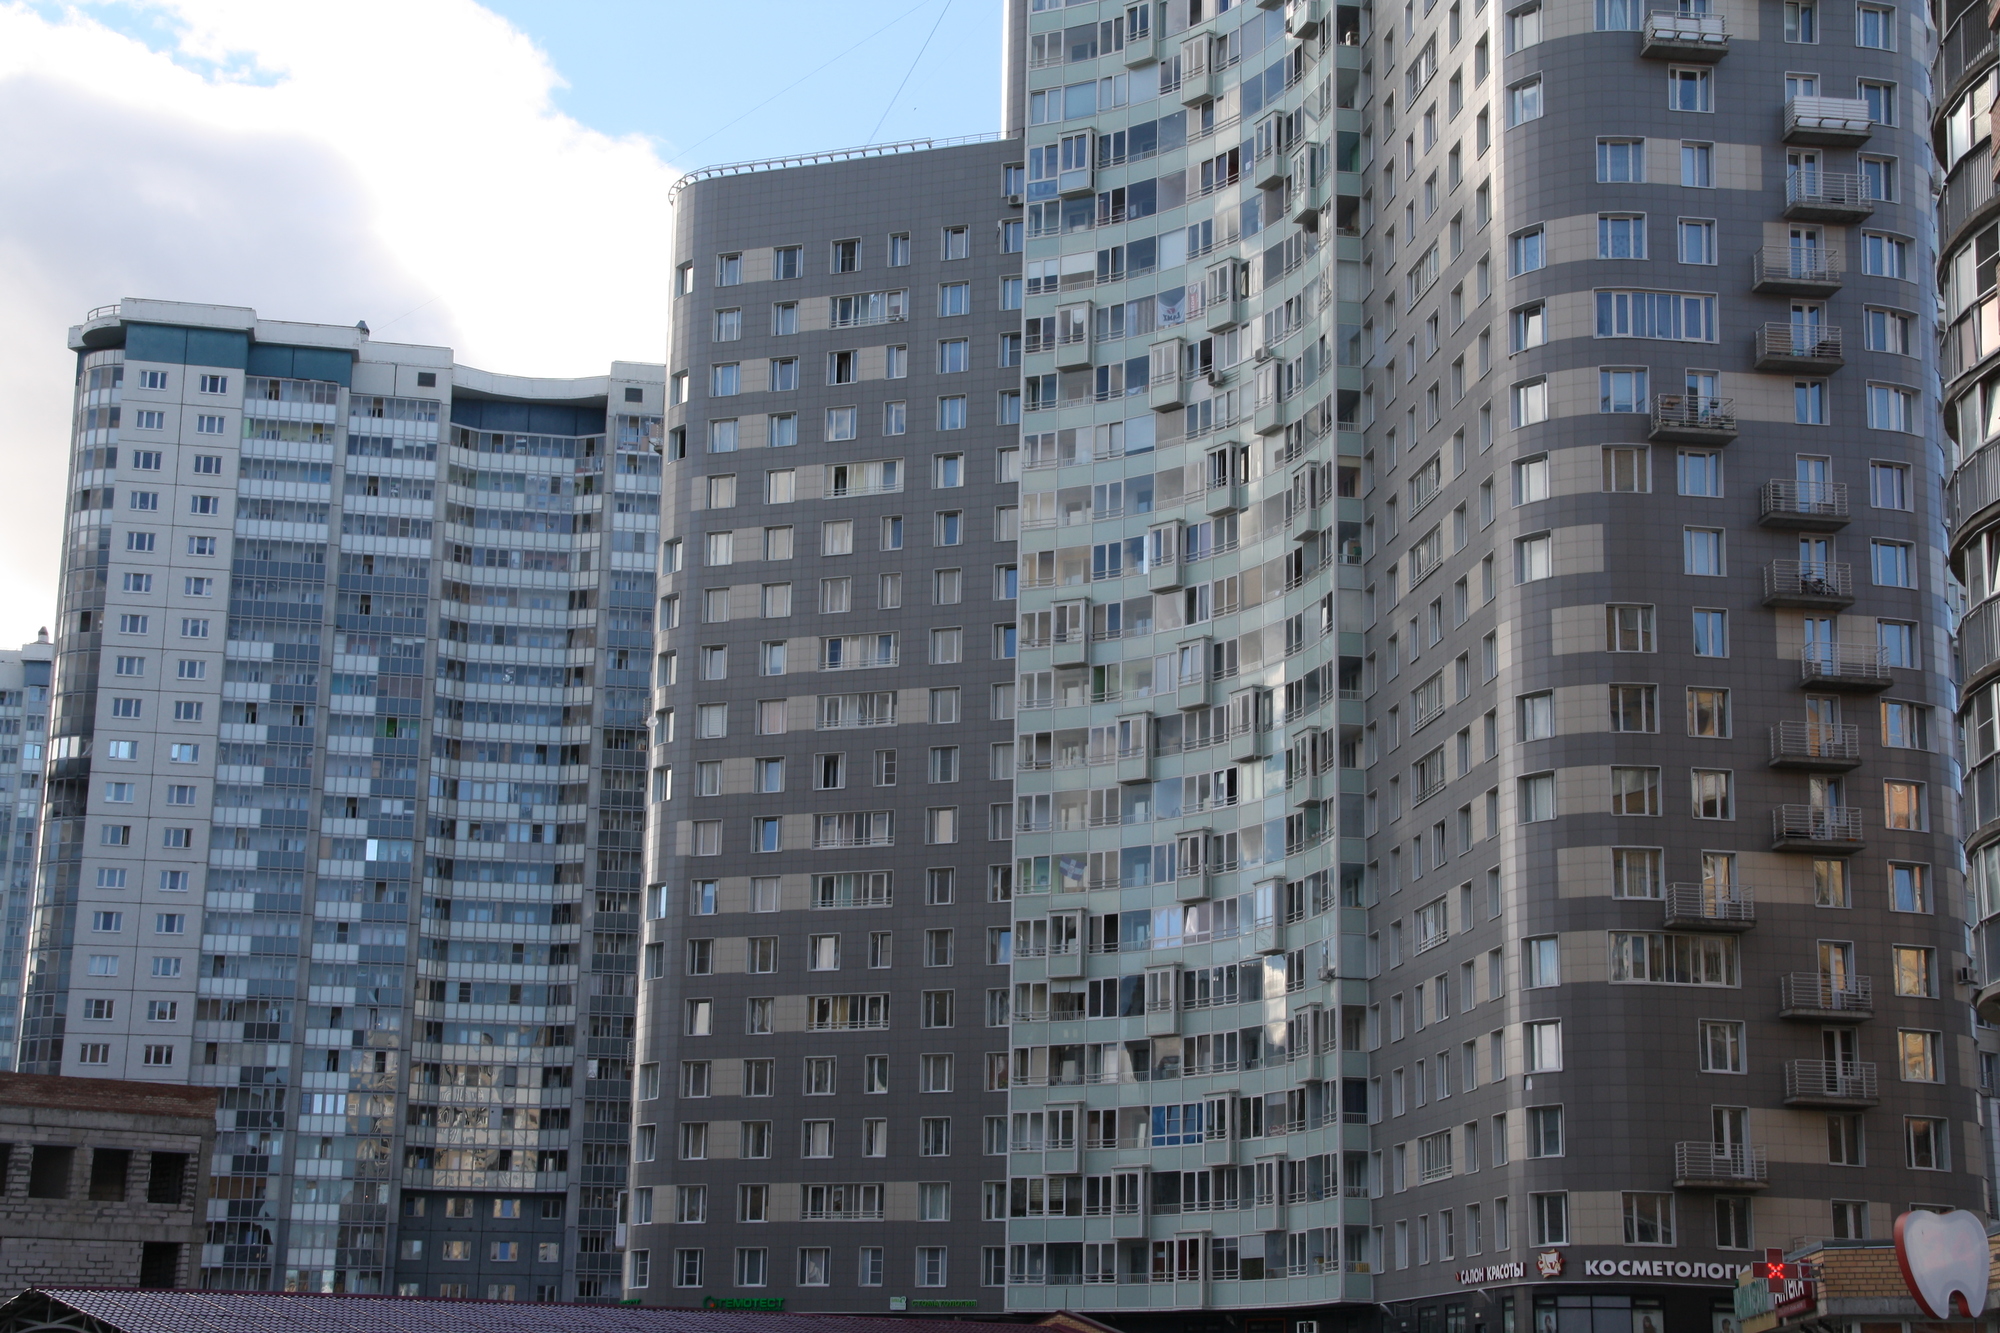 Жителям Петербурга нужно 9 лет откладывать всю зарплату для покупки квартиры